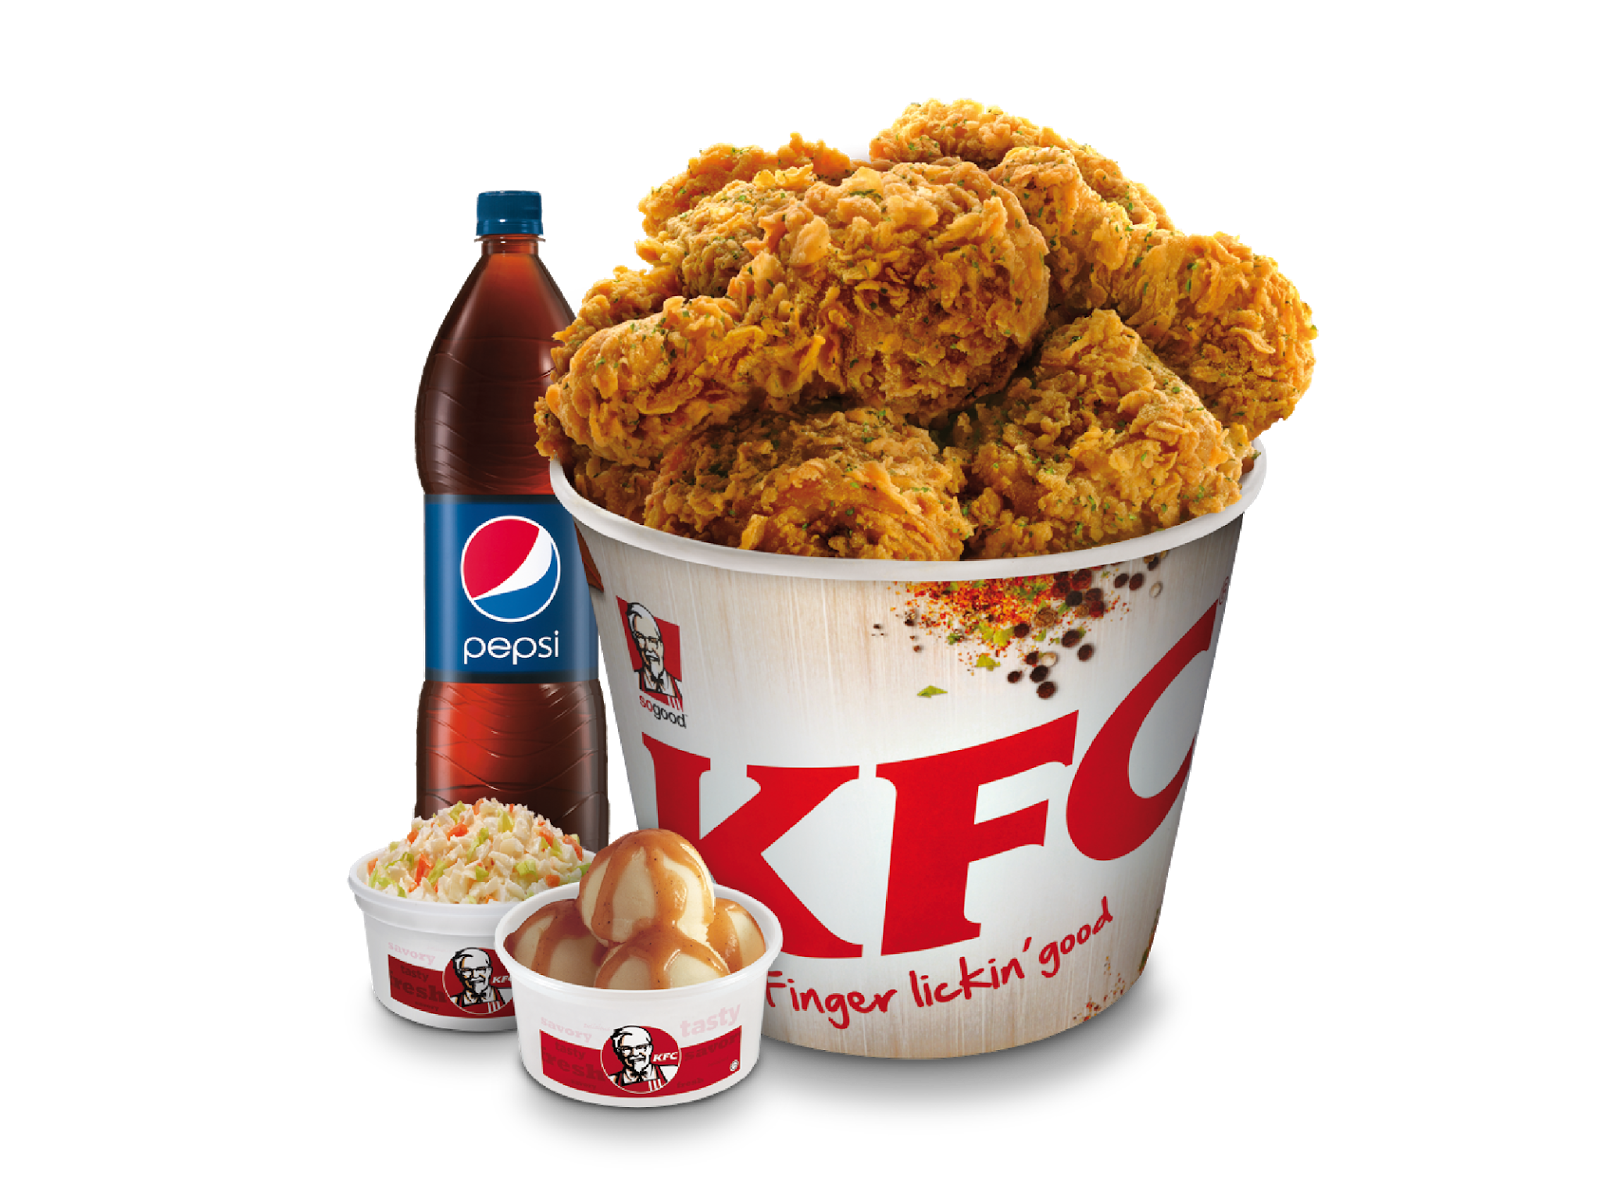 KFC PNG Free File Download